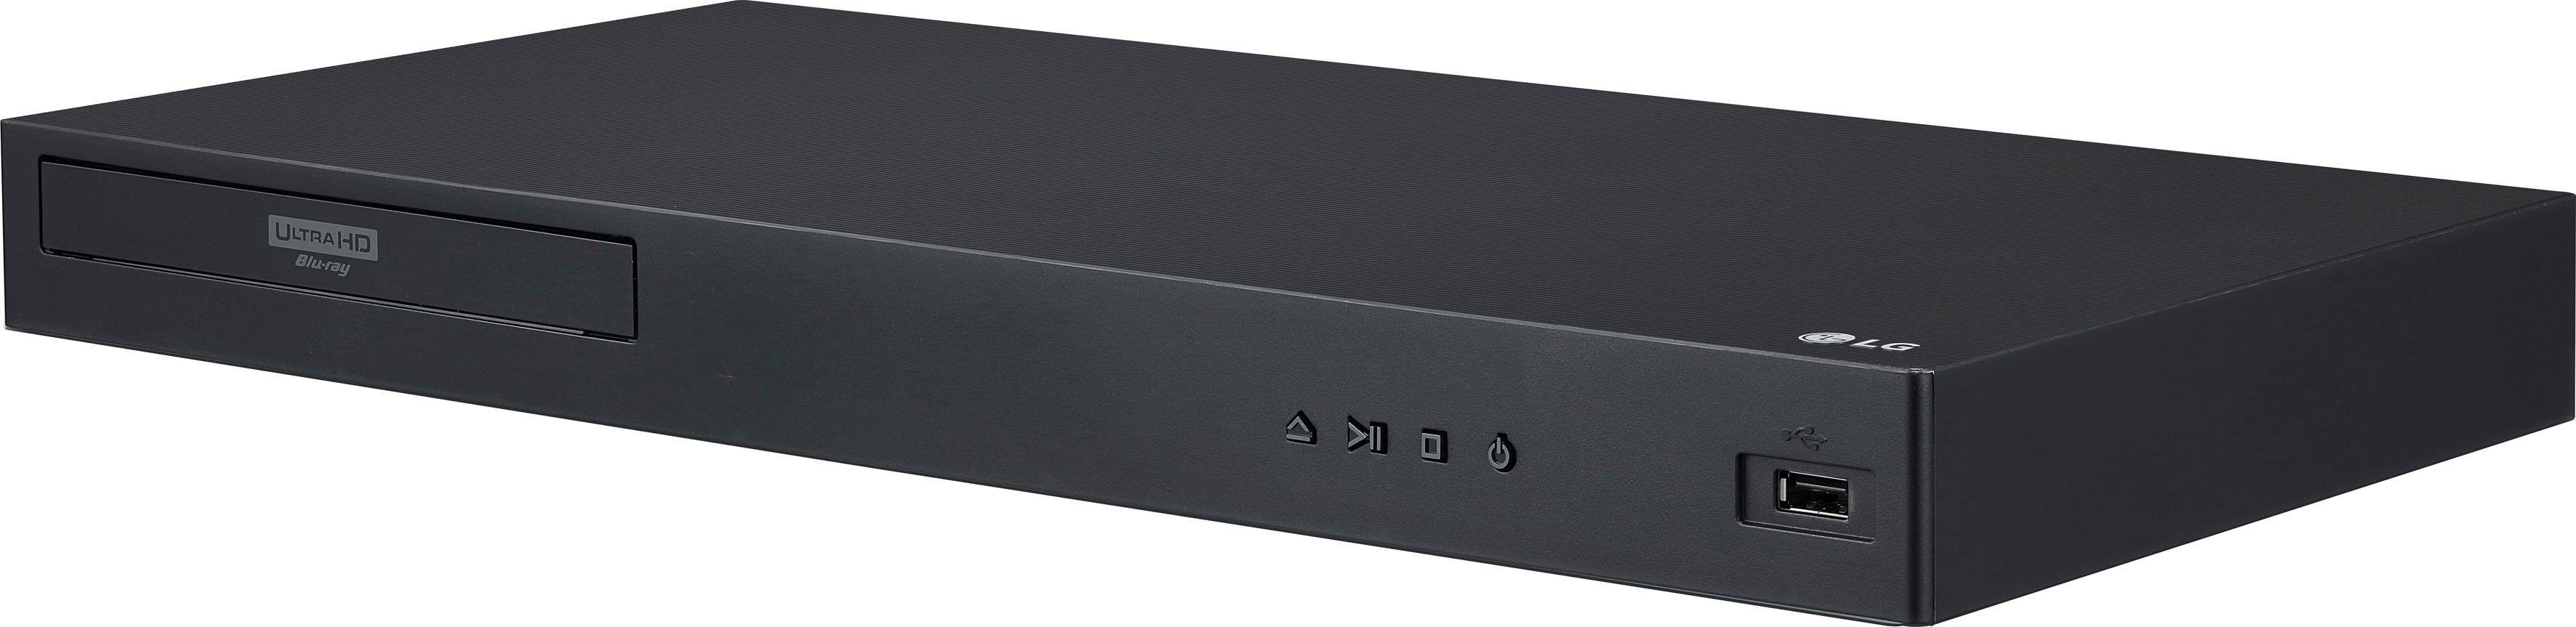 LG UBK90 HD, Ultra WLAN, Blu-ray-Player (4k 4K Upscaling)